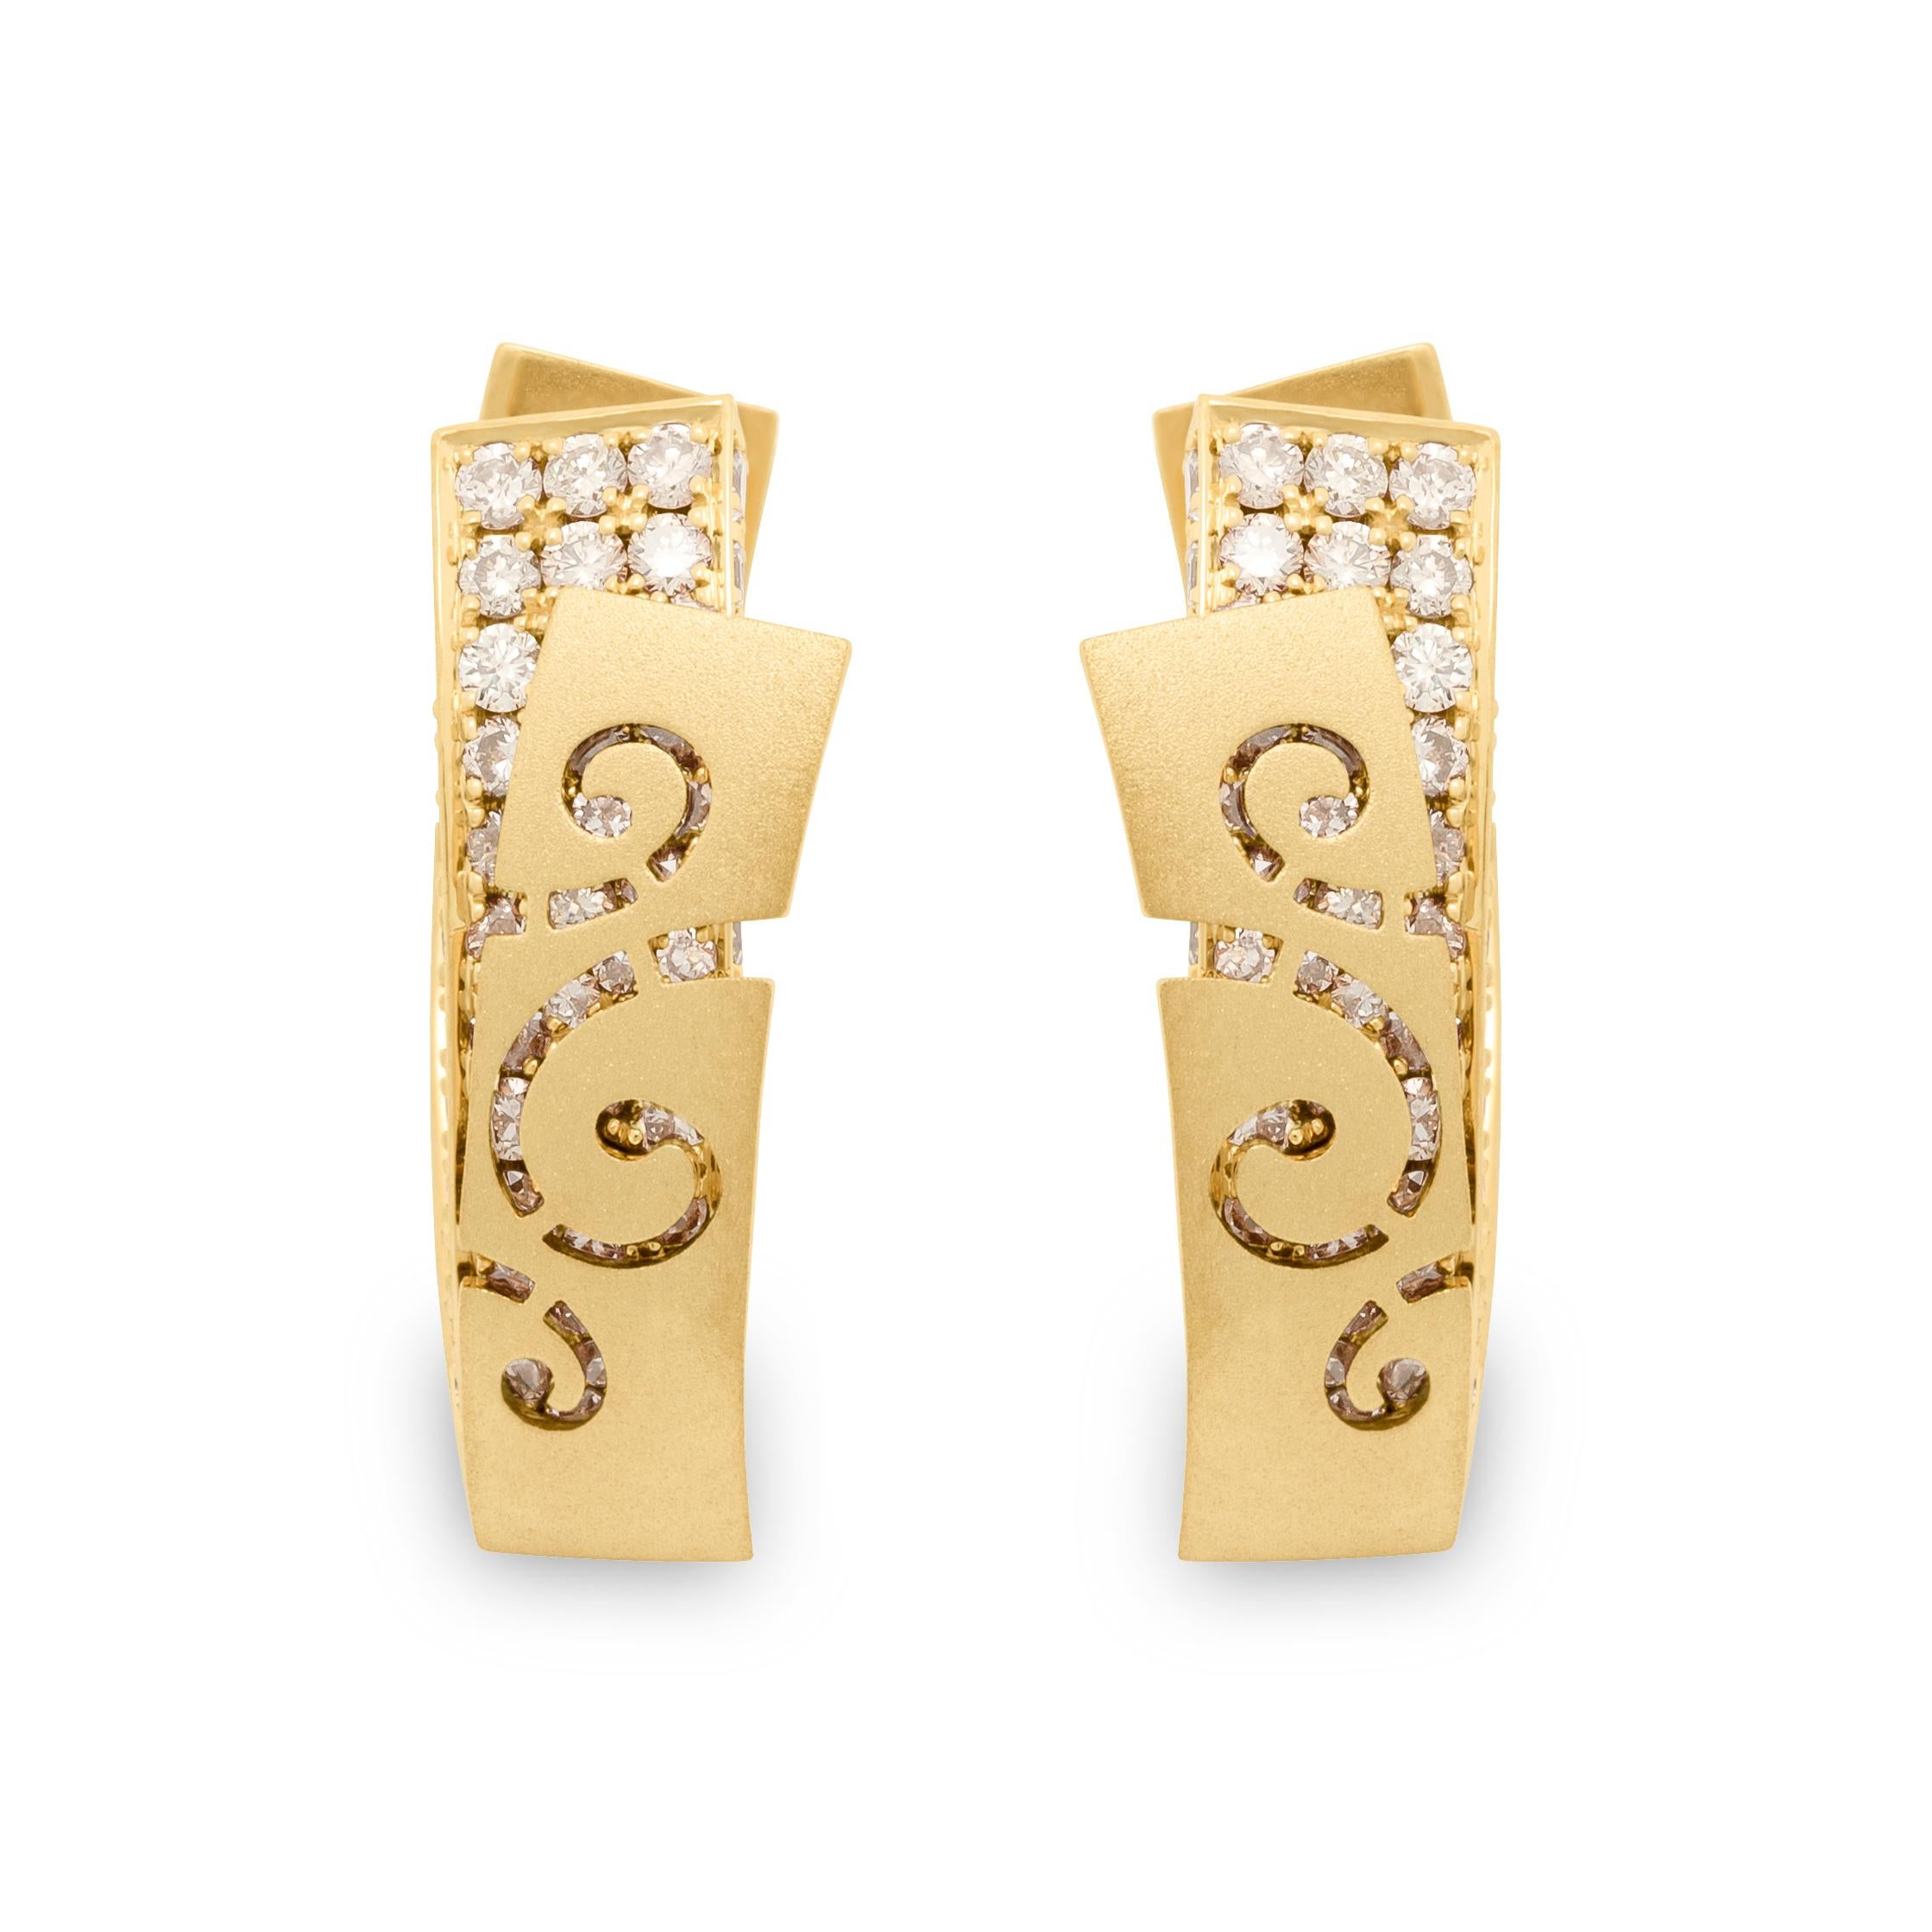 Boucles d'oreilles petit voile en or jaune 18 carats avec diamants de Champagne
Veil a inspiré cette série de bijoux à nos designers. Par exemple, ces boucles d'oreilles semblent avoir deux couches. La première couche est un 